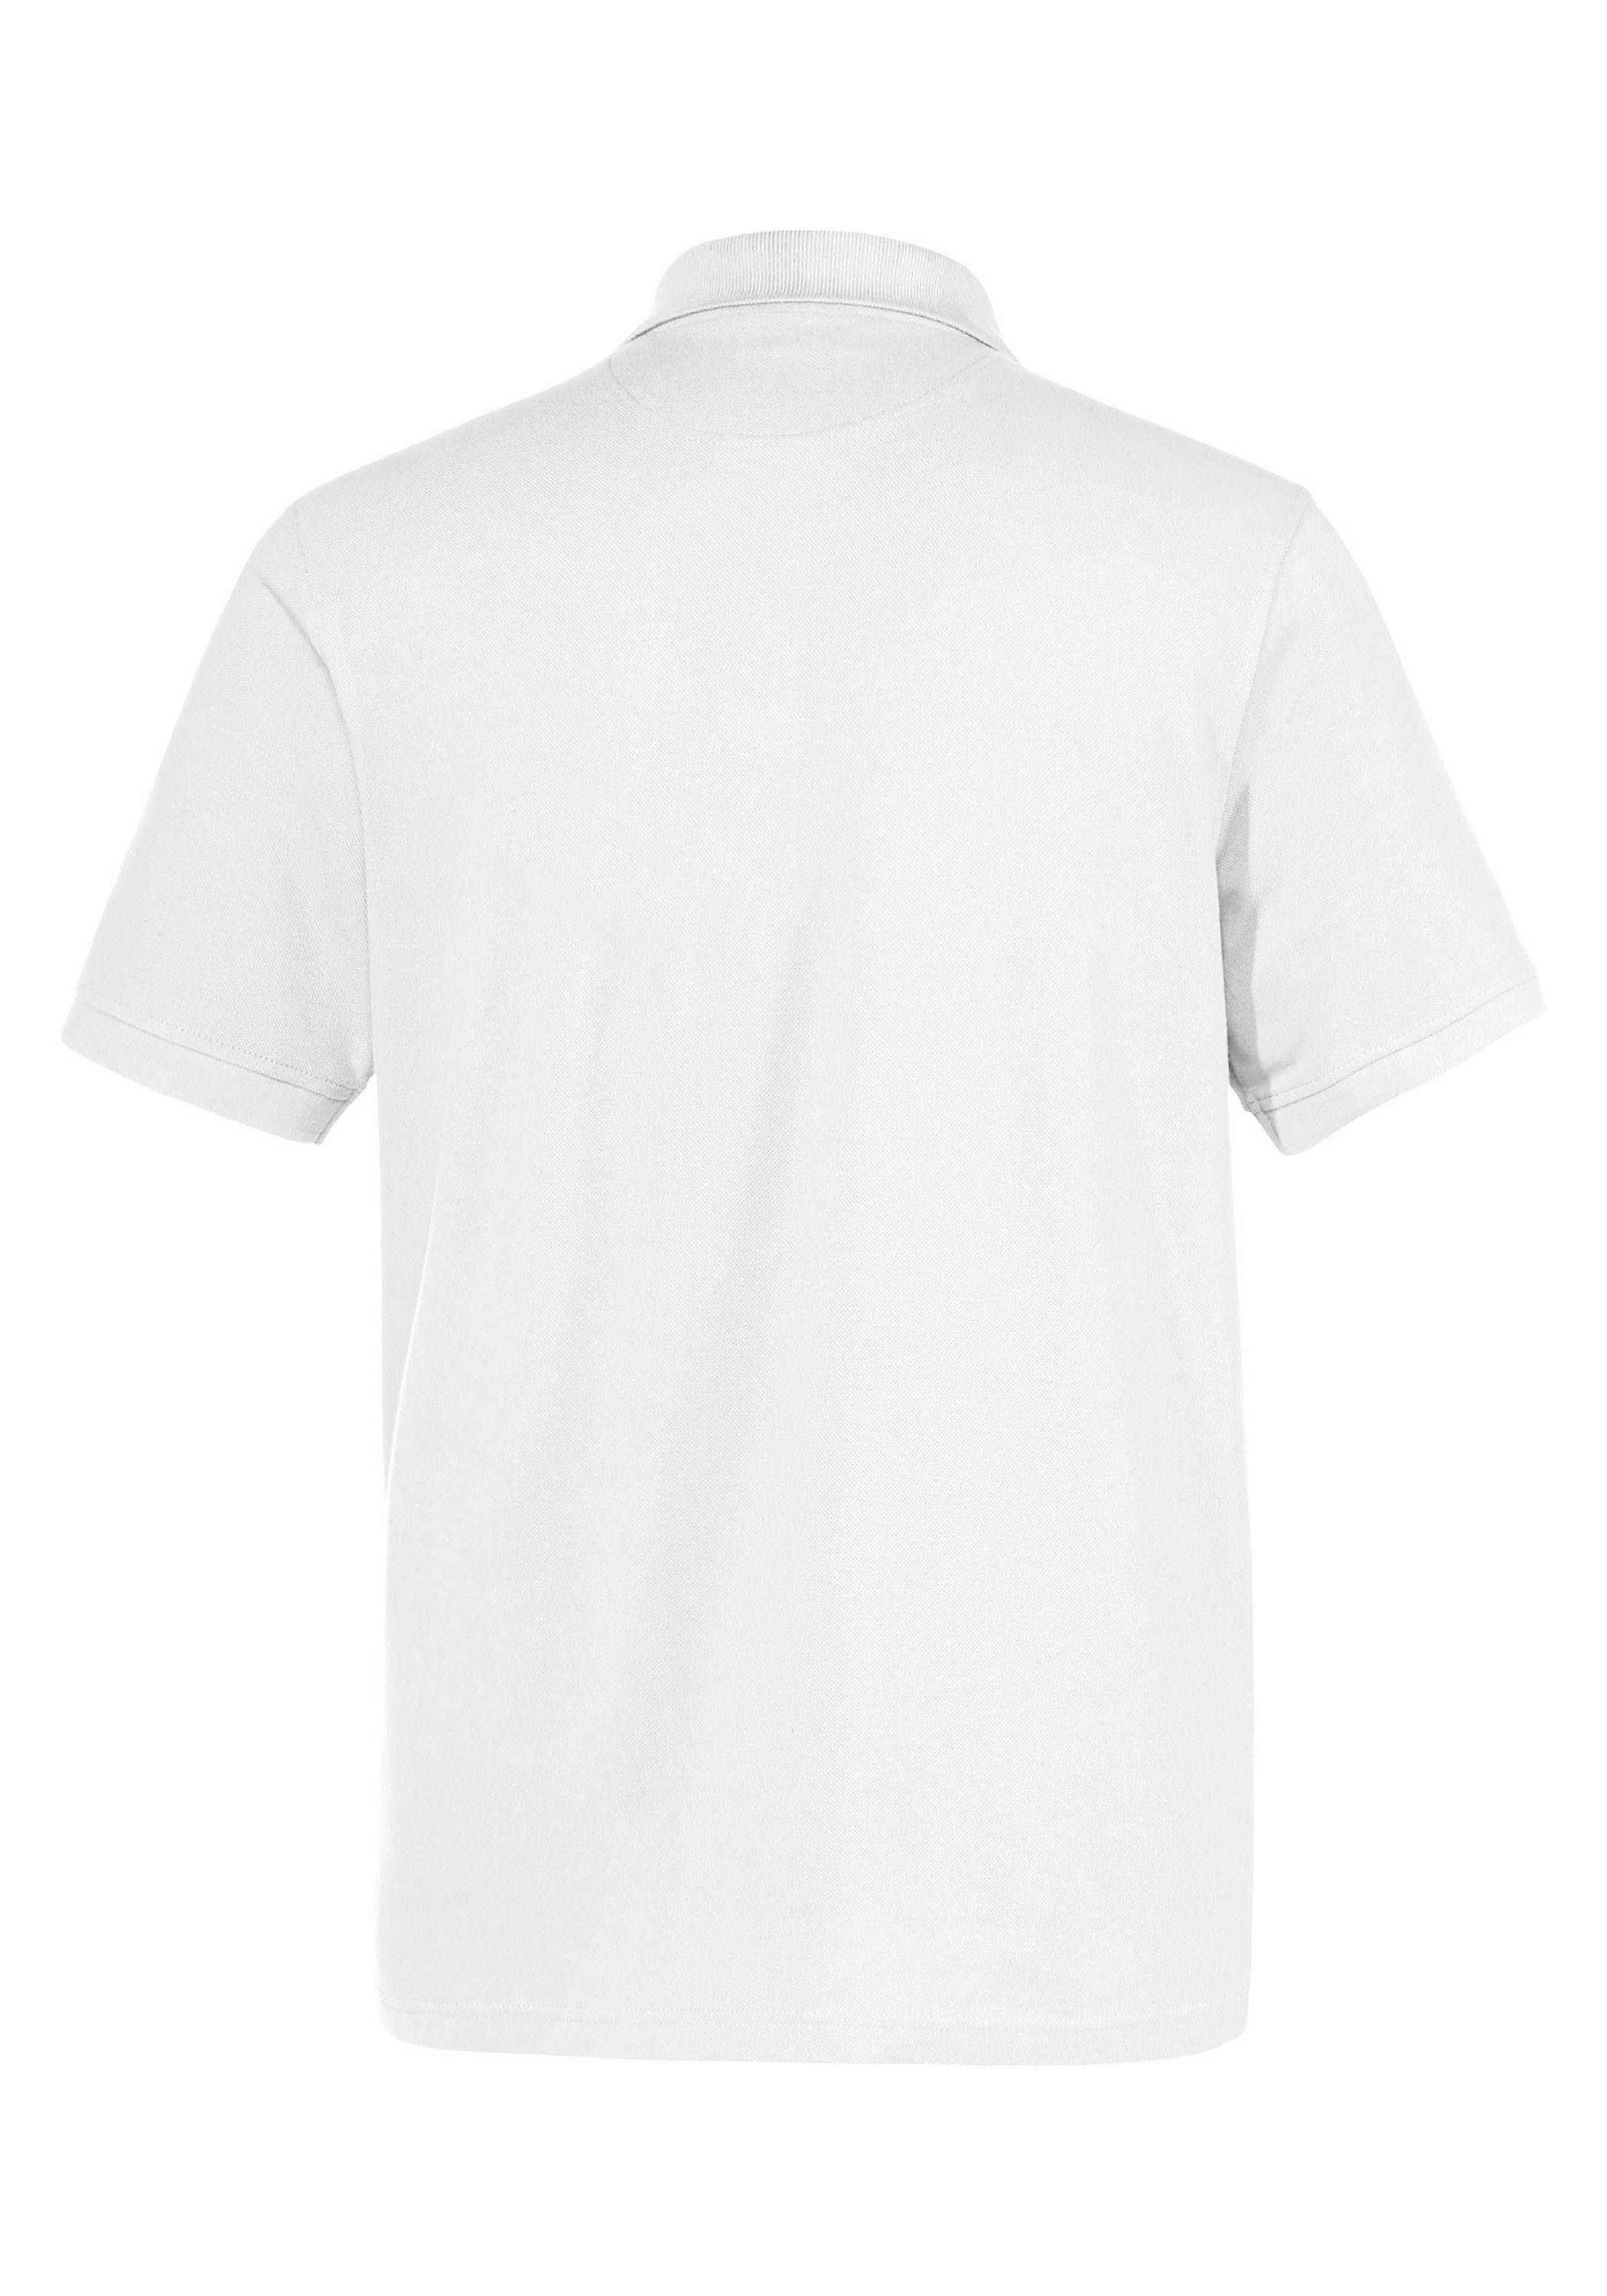 Übergröße Poloshirt Expand weiß in